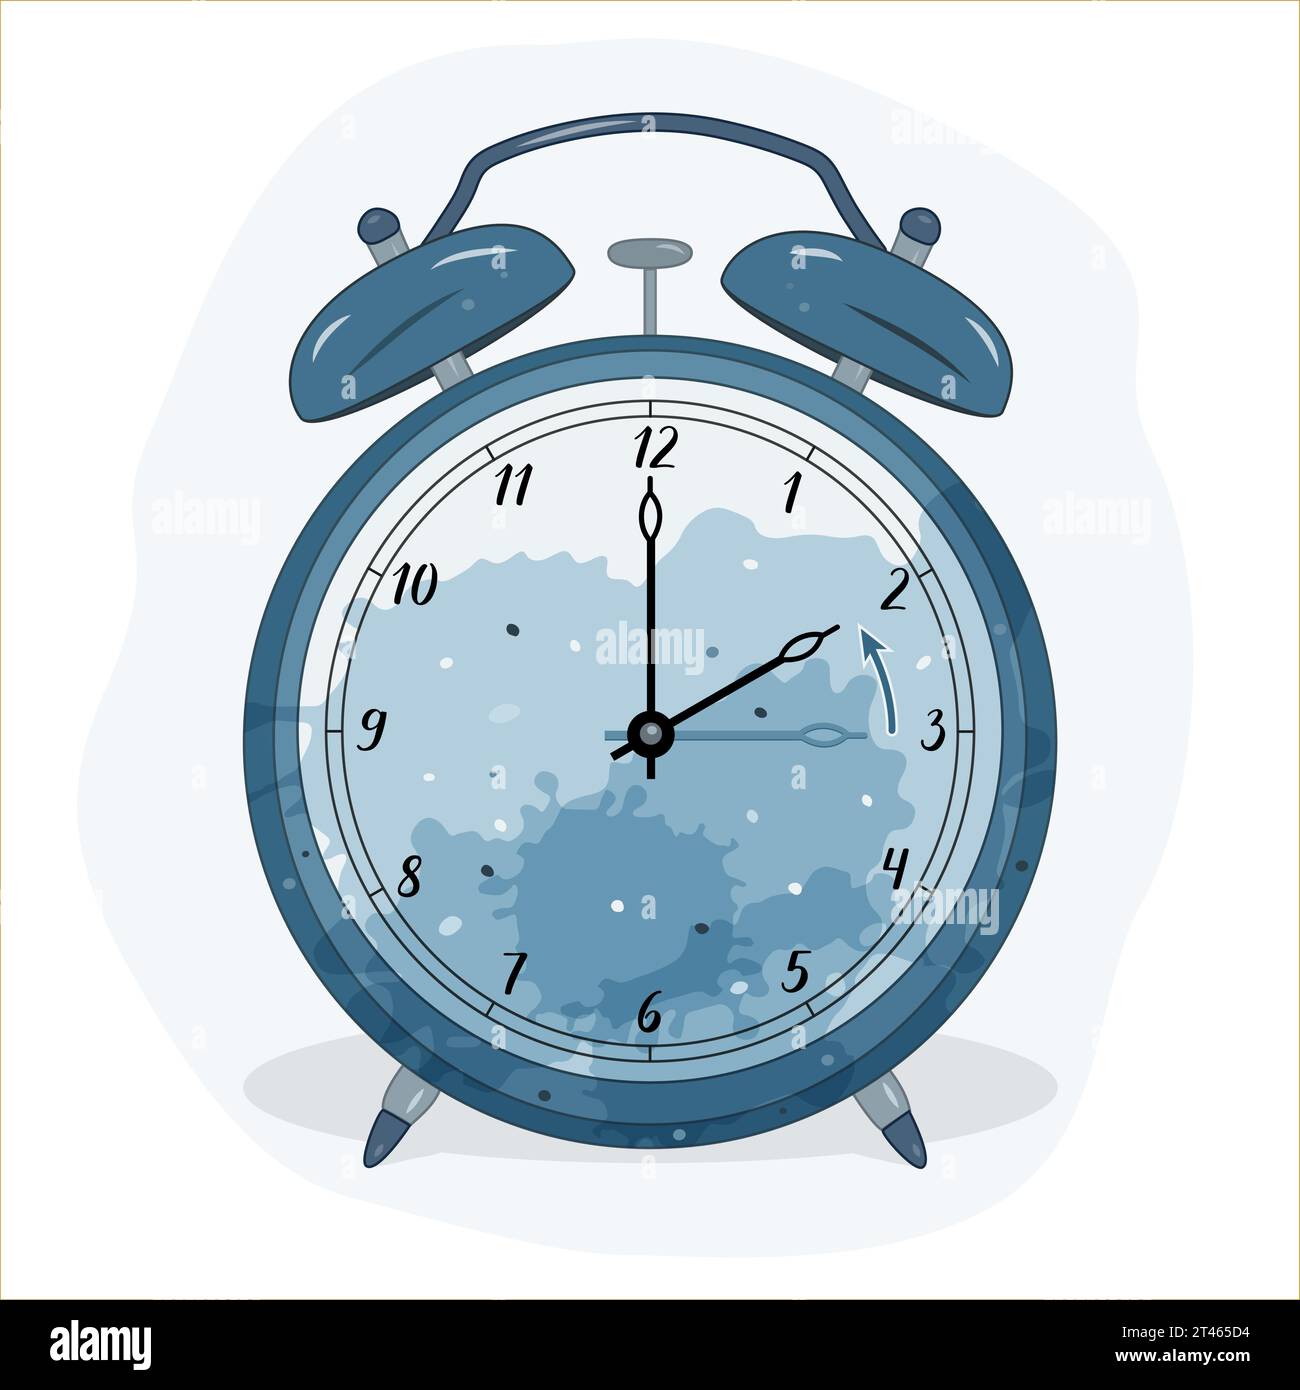 Immagine di una sveglia. Quello blu simboleggia il tempo invernale. Simbolo di regolazione dell'ora. Spostare le mani indietro dalle 3:00 alle 2:00. Illustrazione Vettoriale